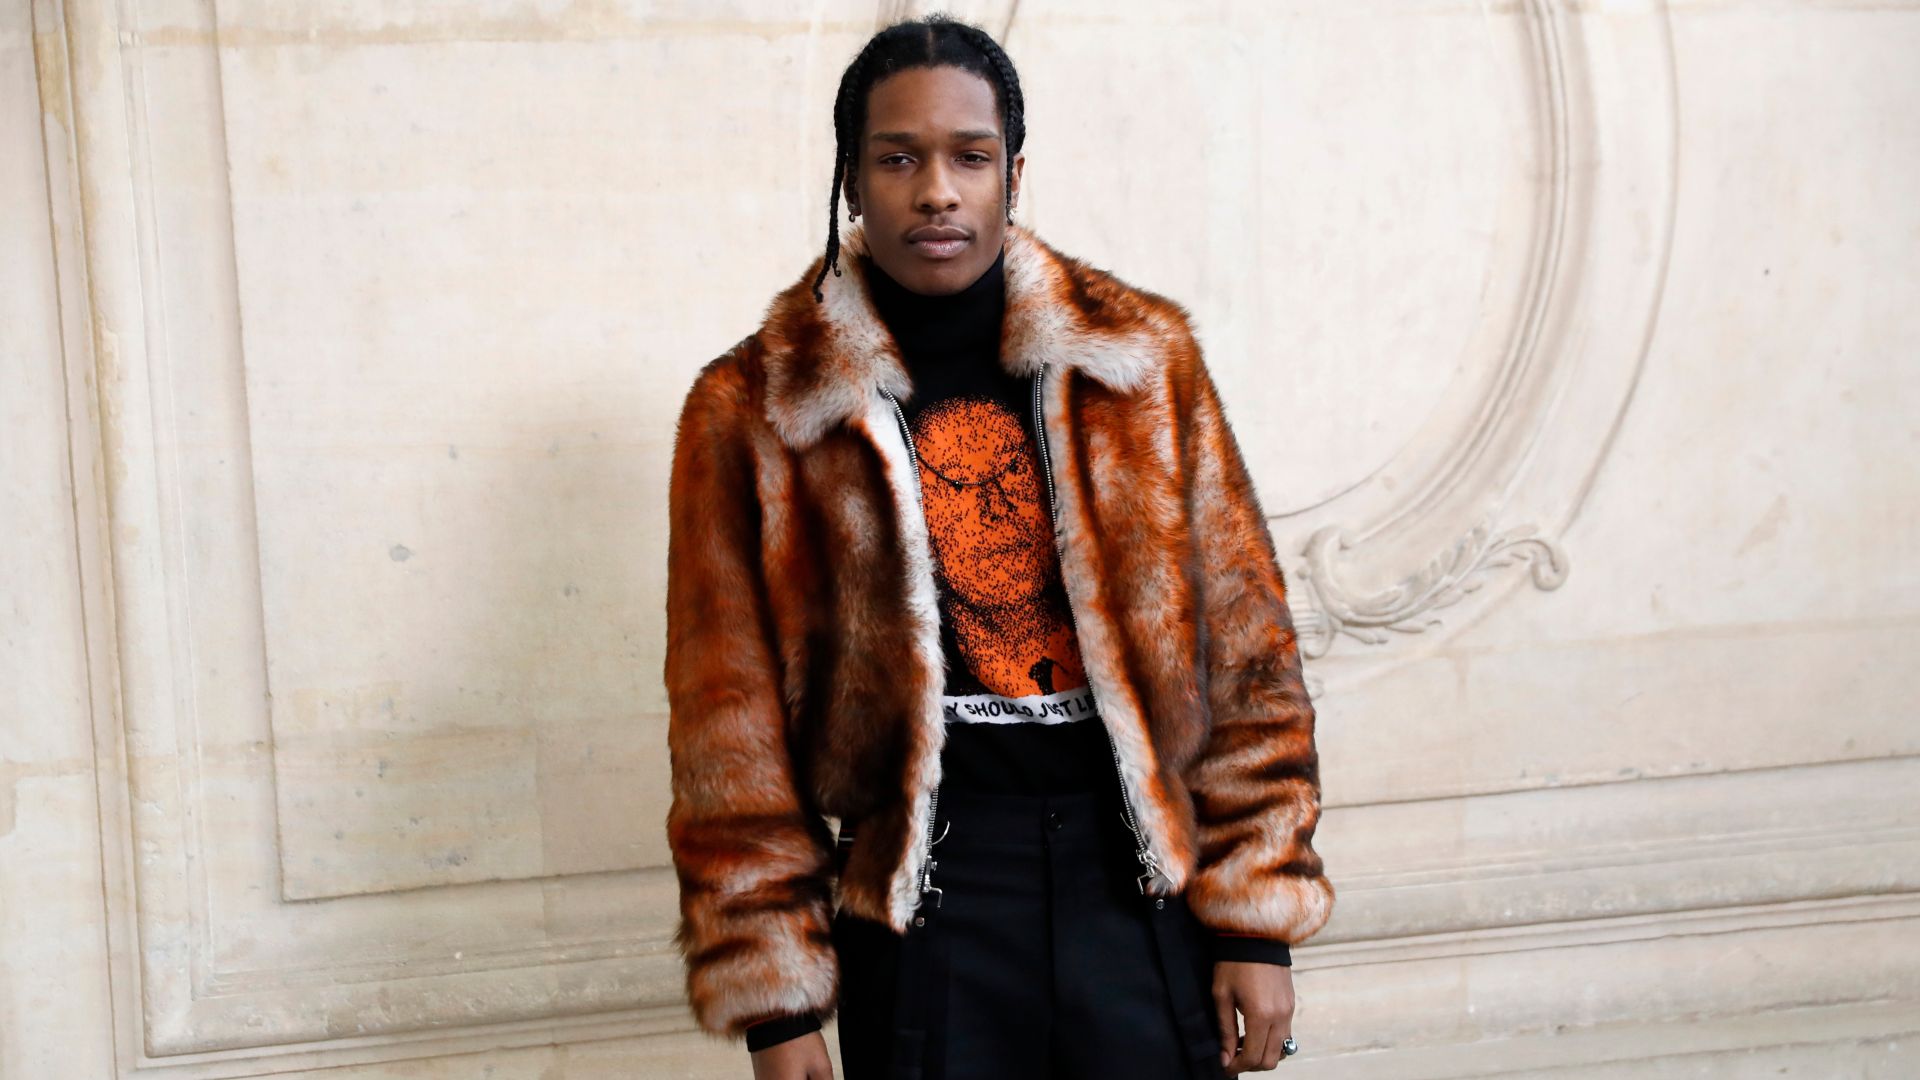 El rapero estadounidense A$AP Rocky se arriesga a dos años de prisión en Suecia